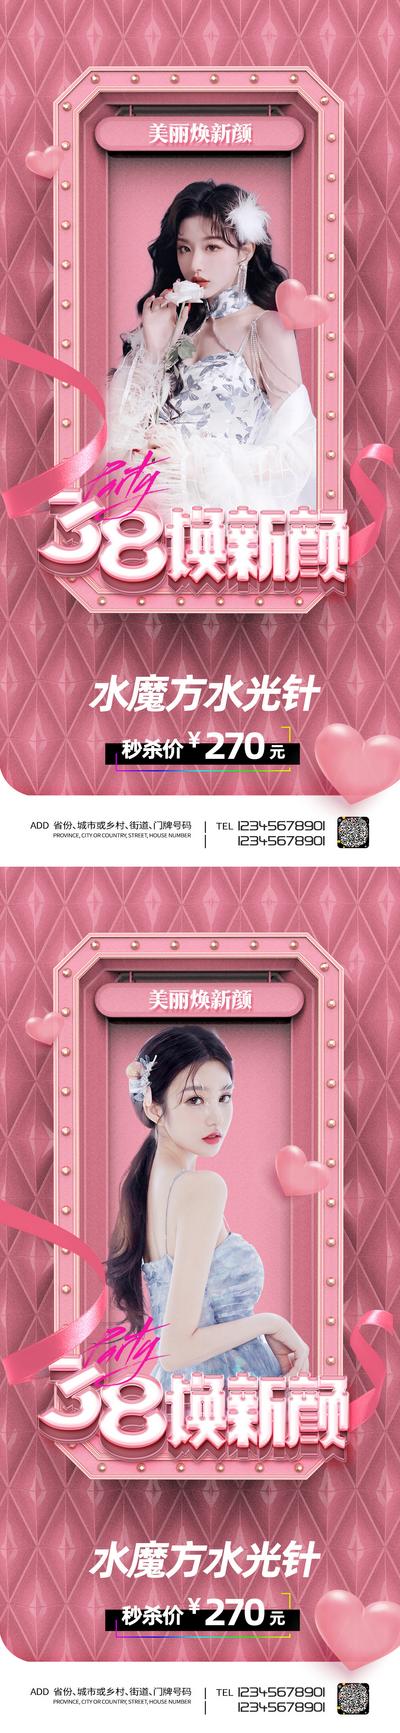 南门网 广告 海报 医美 38 女神节 妇女节 活动 促销 水光针 秒杀